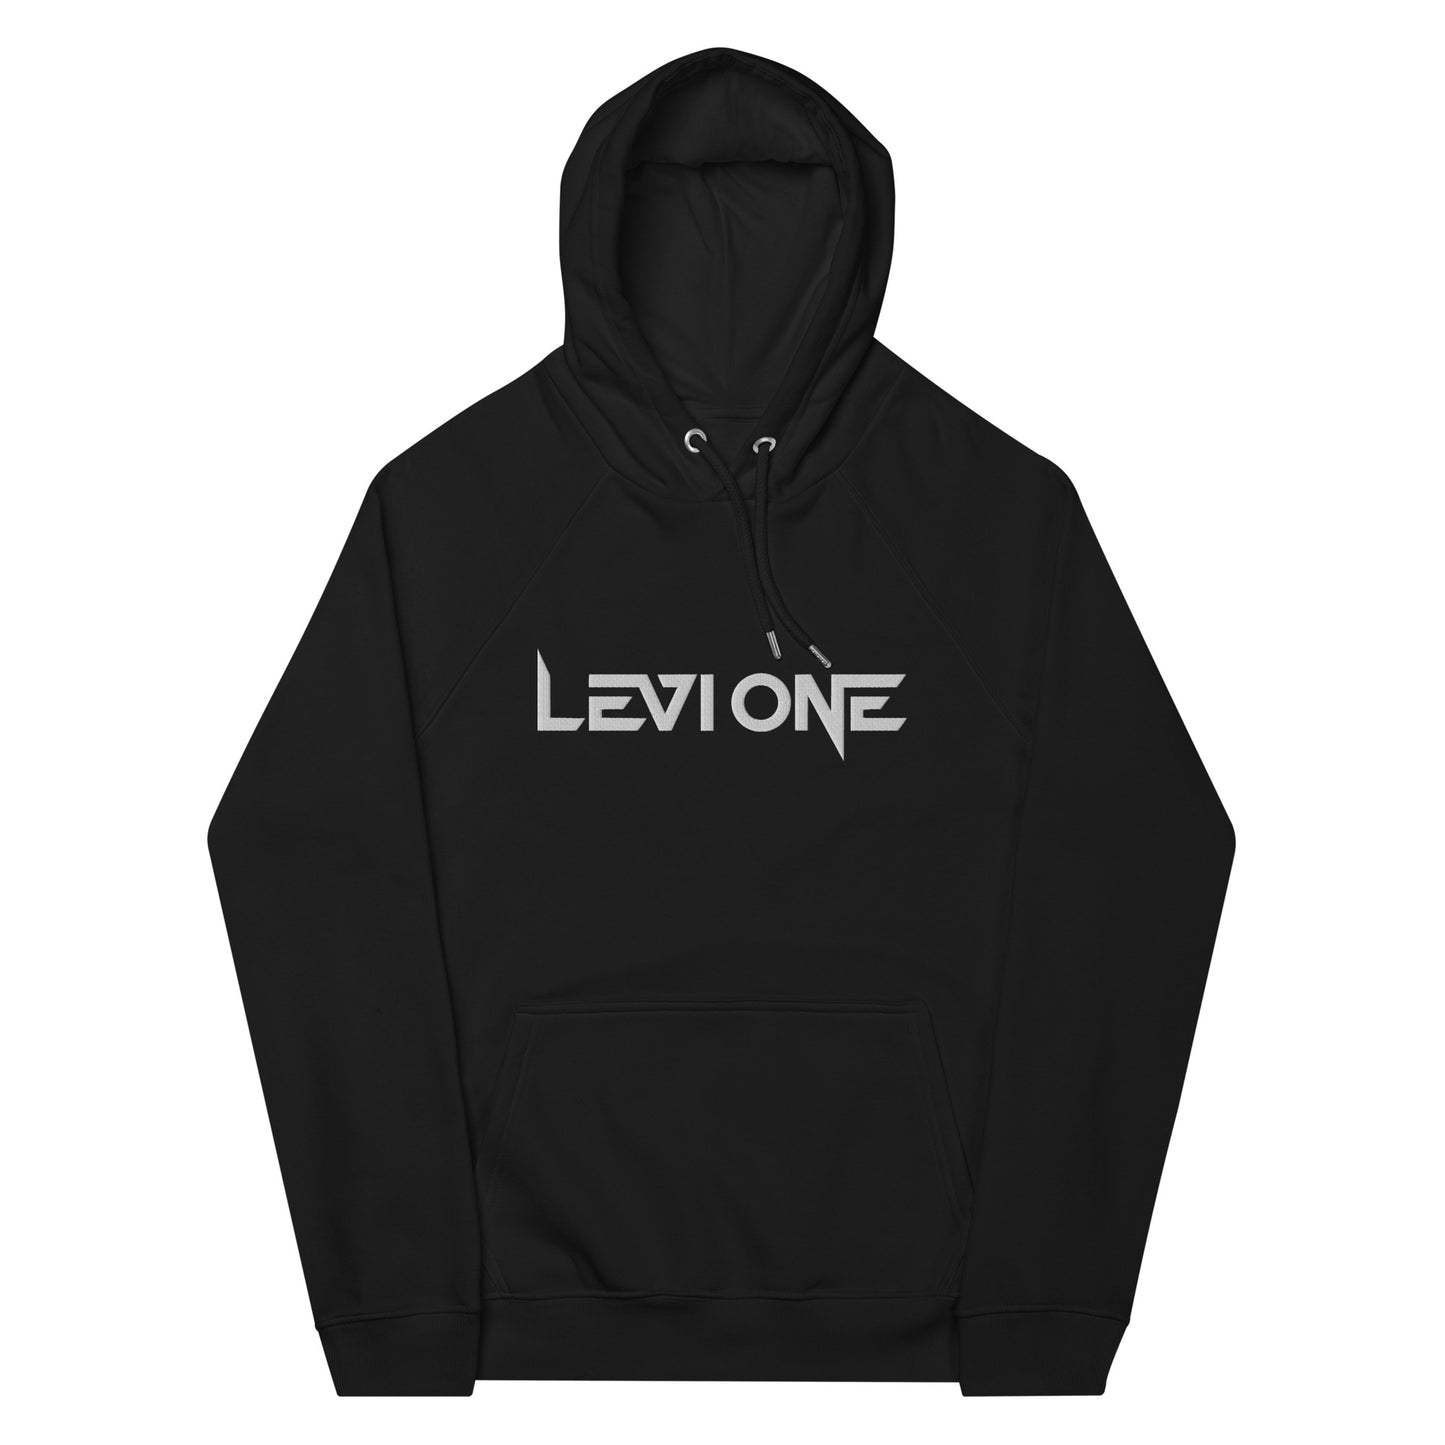 Levi One Unisex eco hoodie